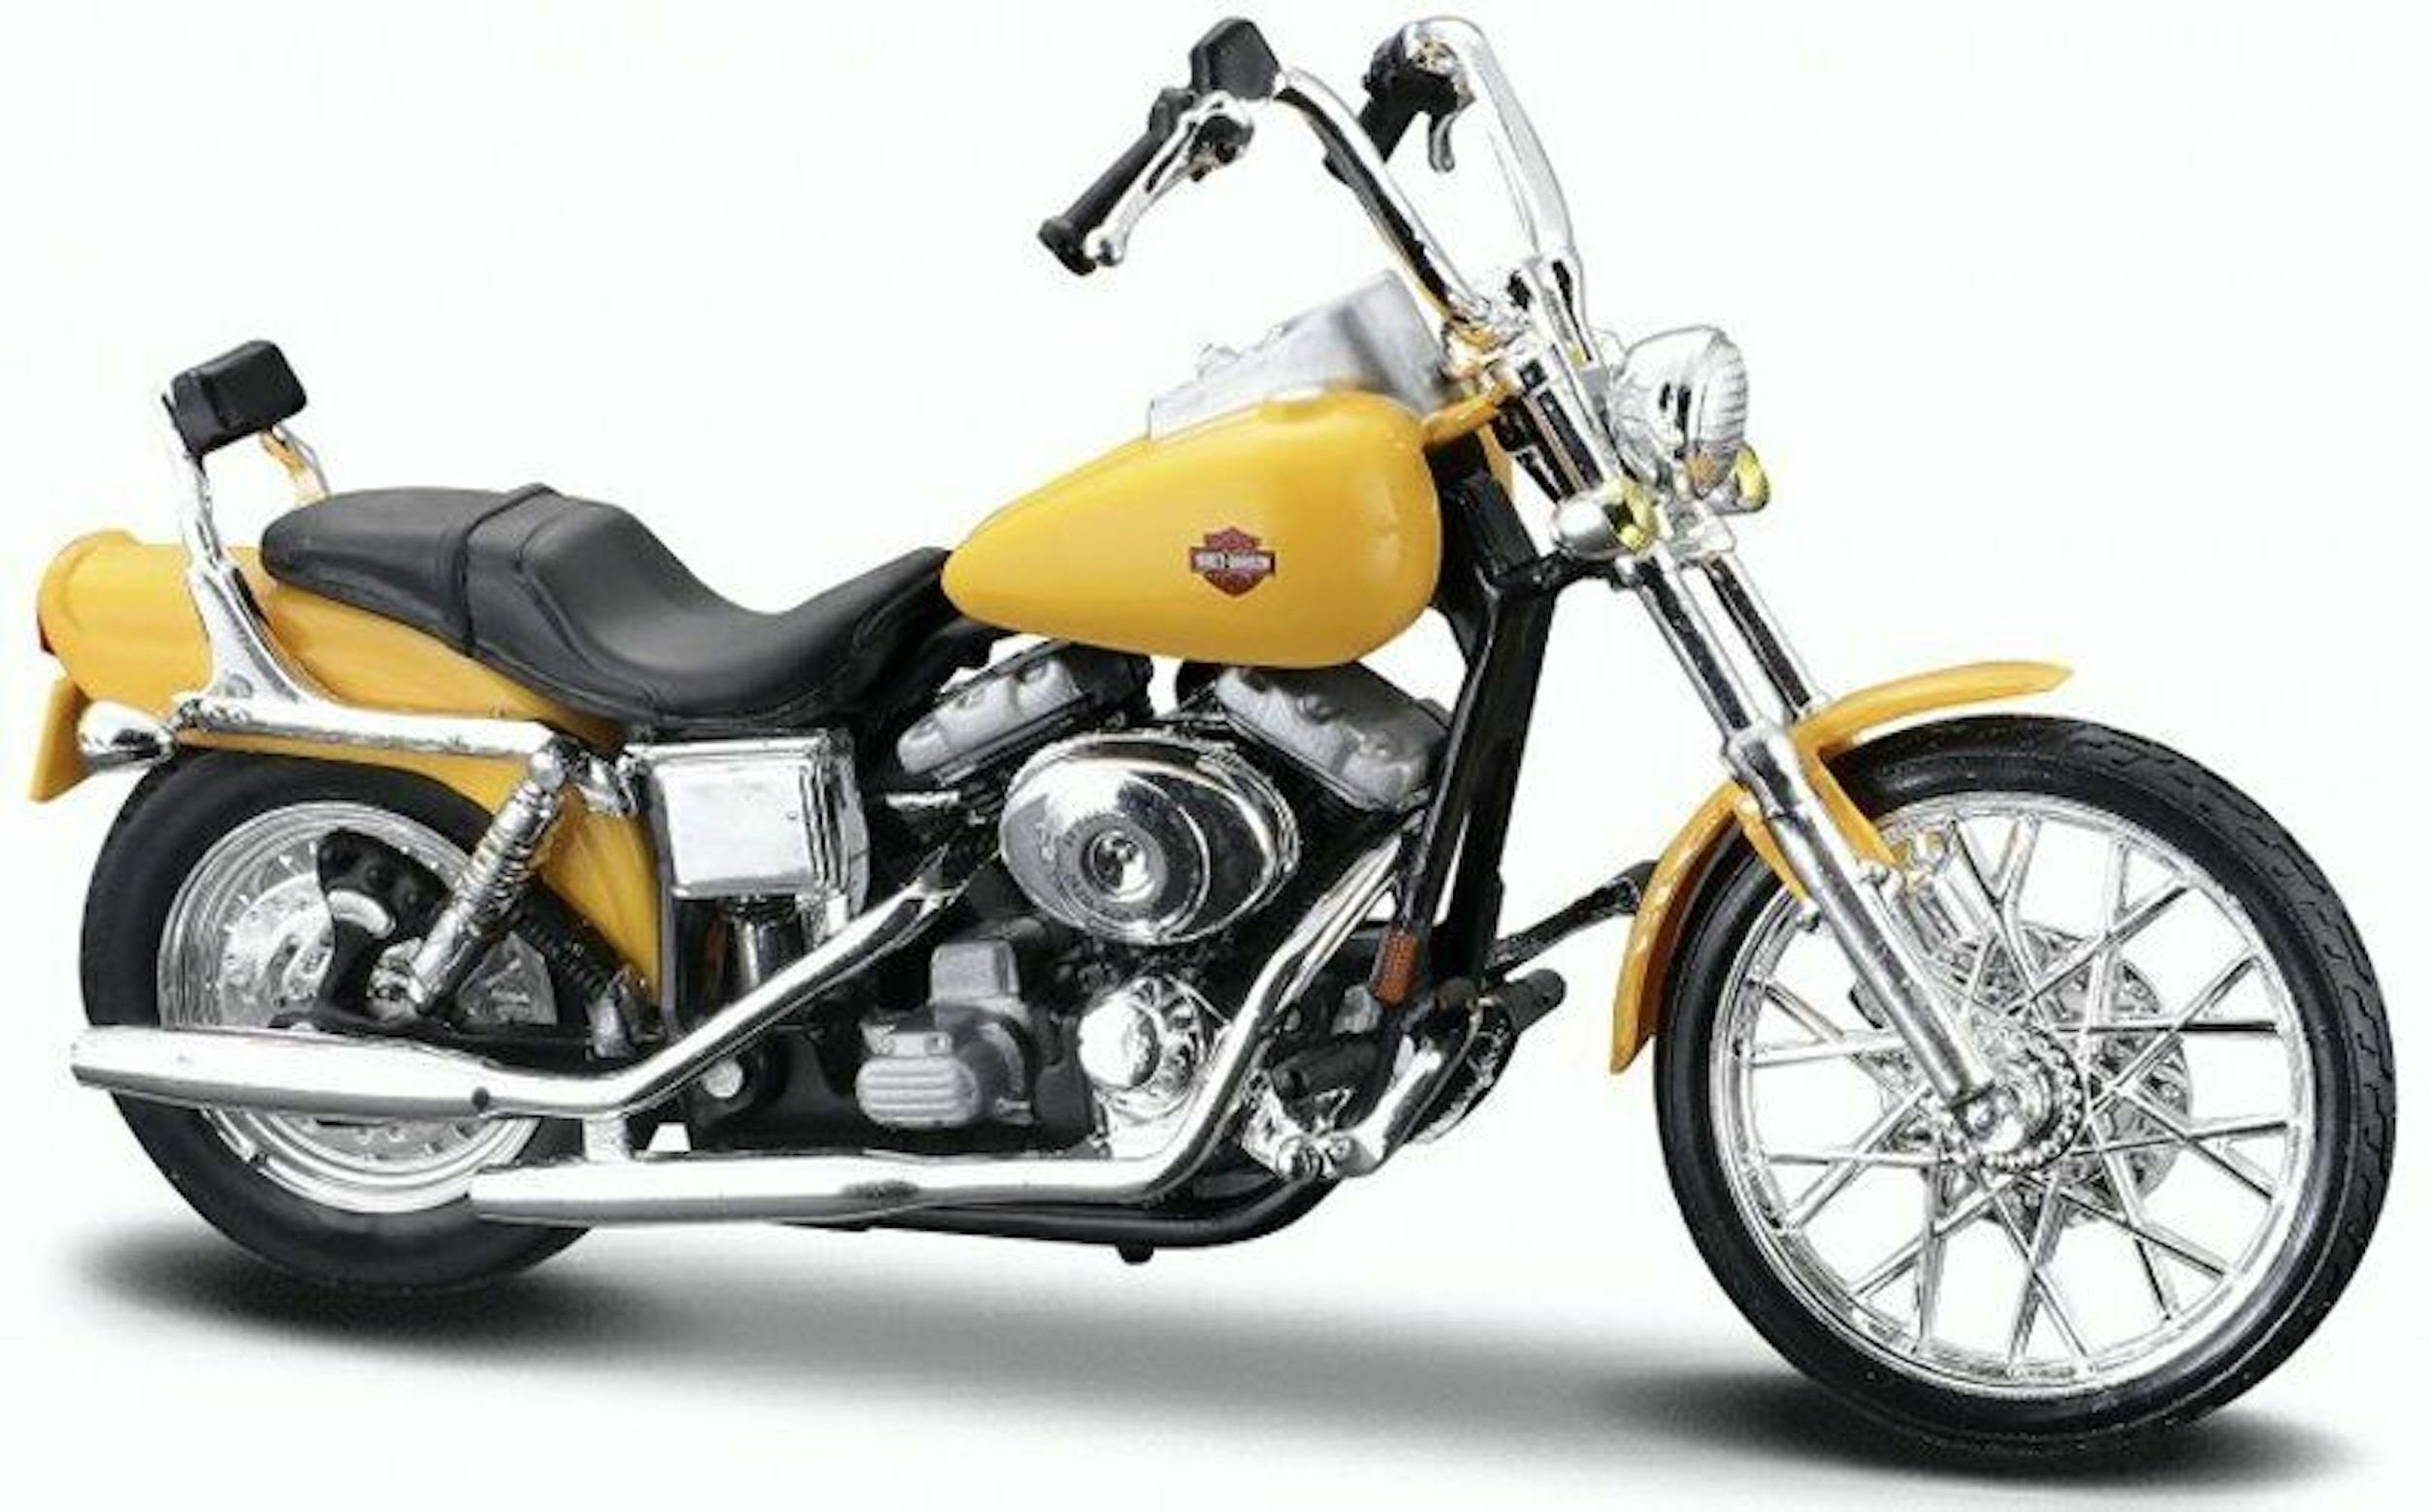 Maisto® Modellmotorrad Modellmotorrad - HD Serie 39 »2001 FXDWG Dyna Wide Glide (gelb)«, Maßstab 1:18, detailliertes Modell